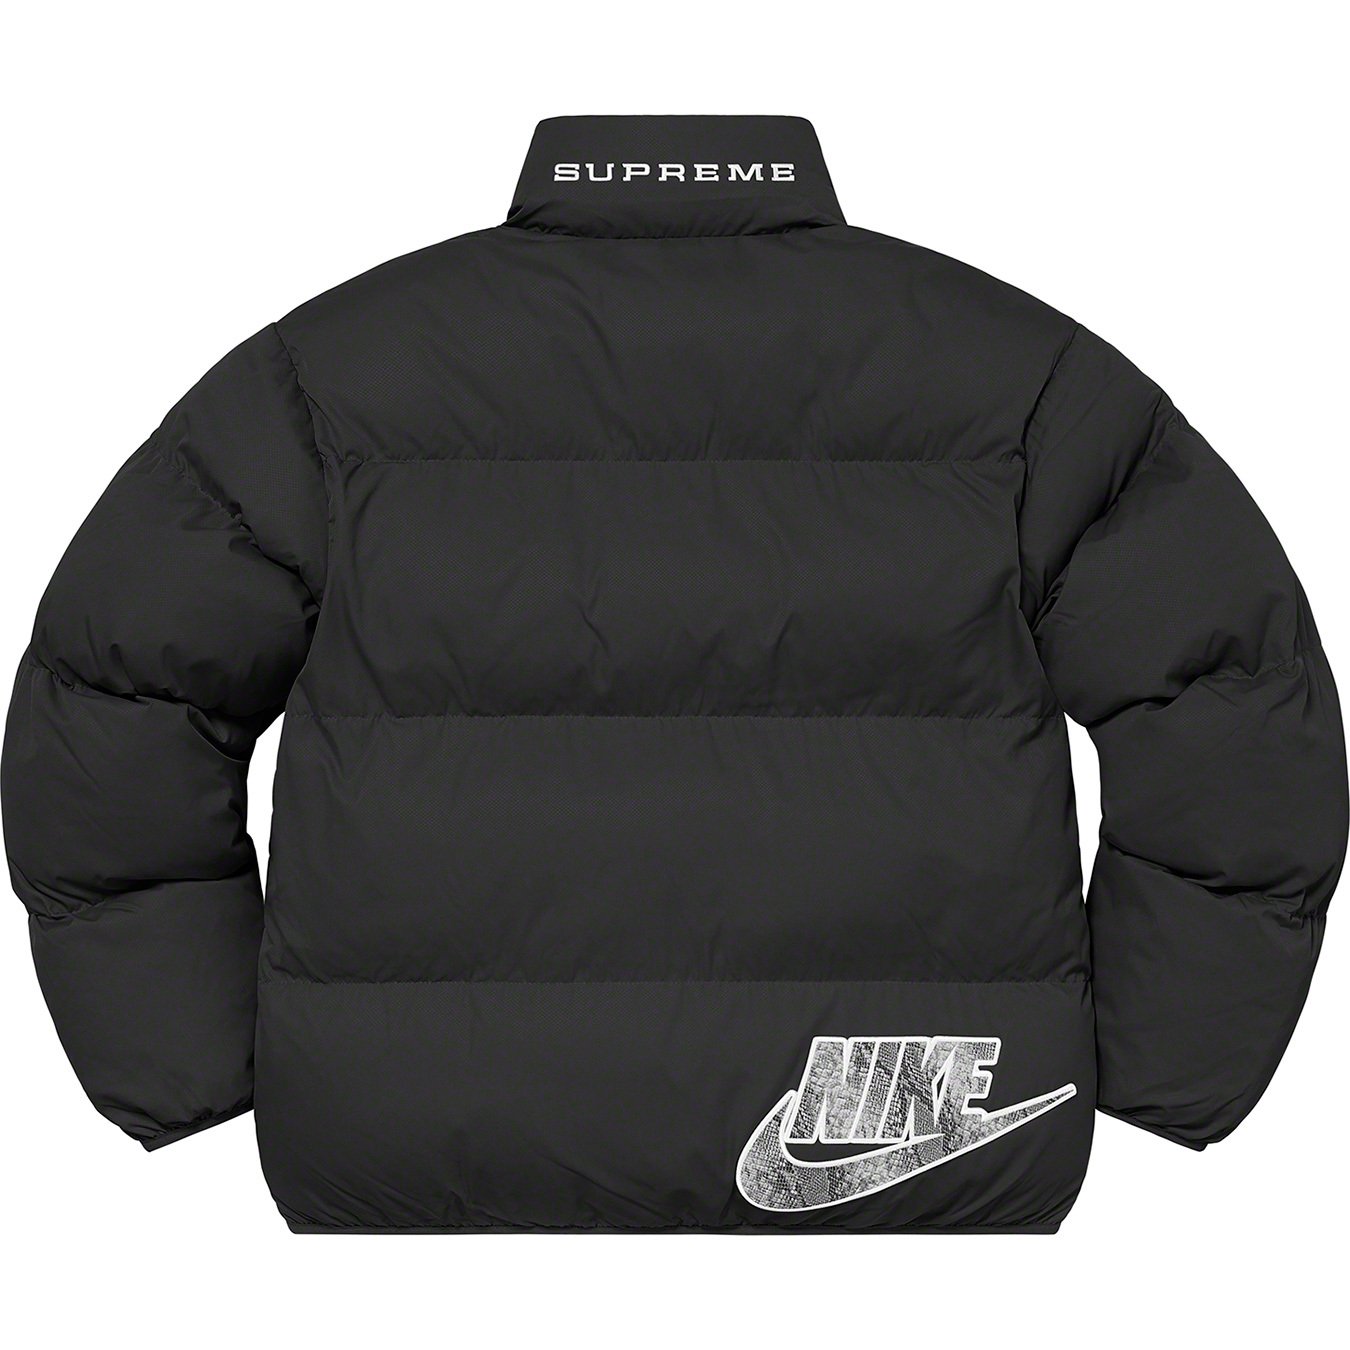 Nike Reversible Puffy Jacket - spring summer 2021 - Supreme